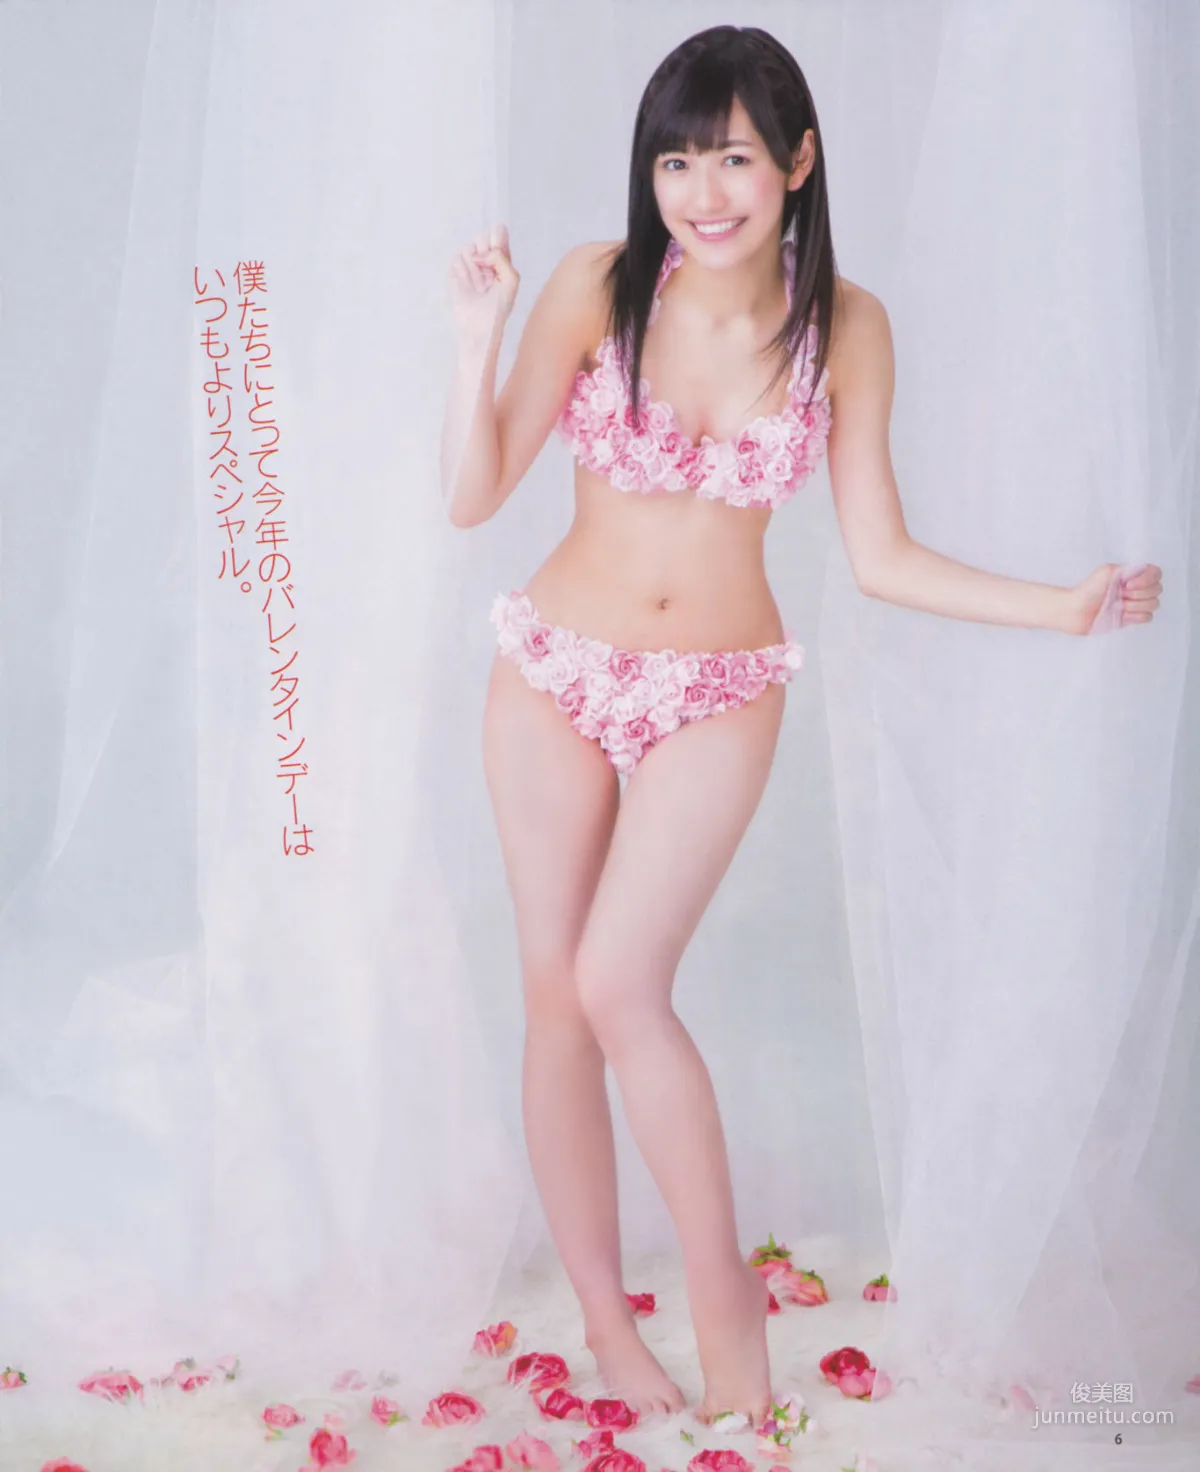 [Bomb Magazine] 2013年No.03 渡边麻友 秋元才加 AKB48 写真杂志6